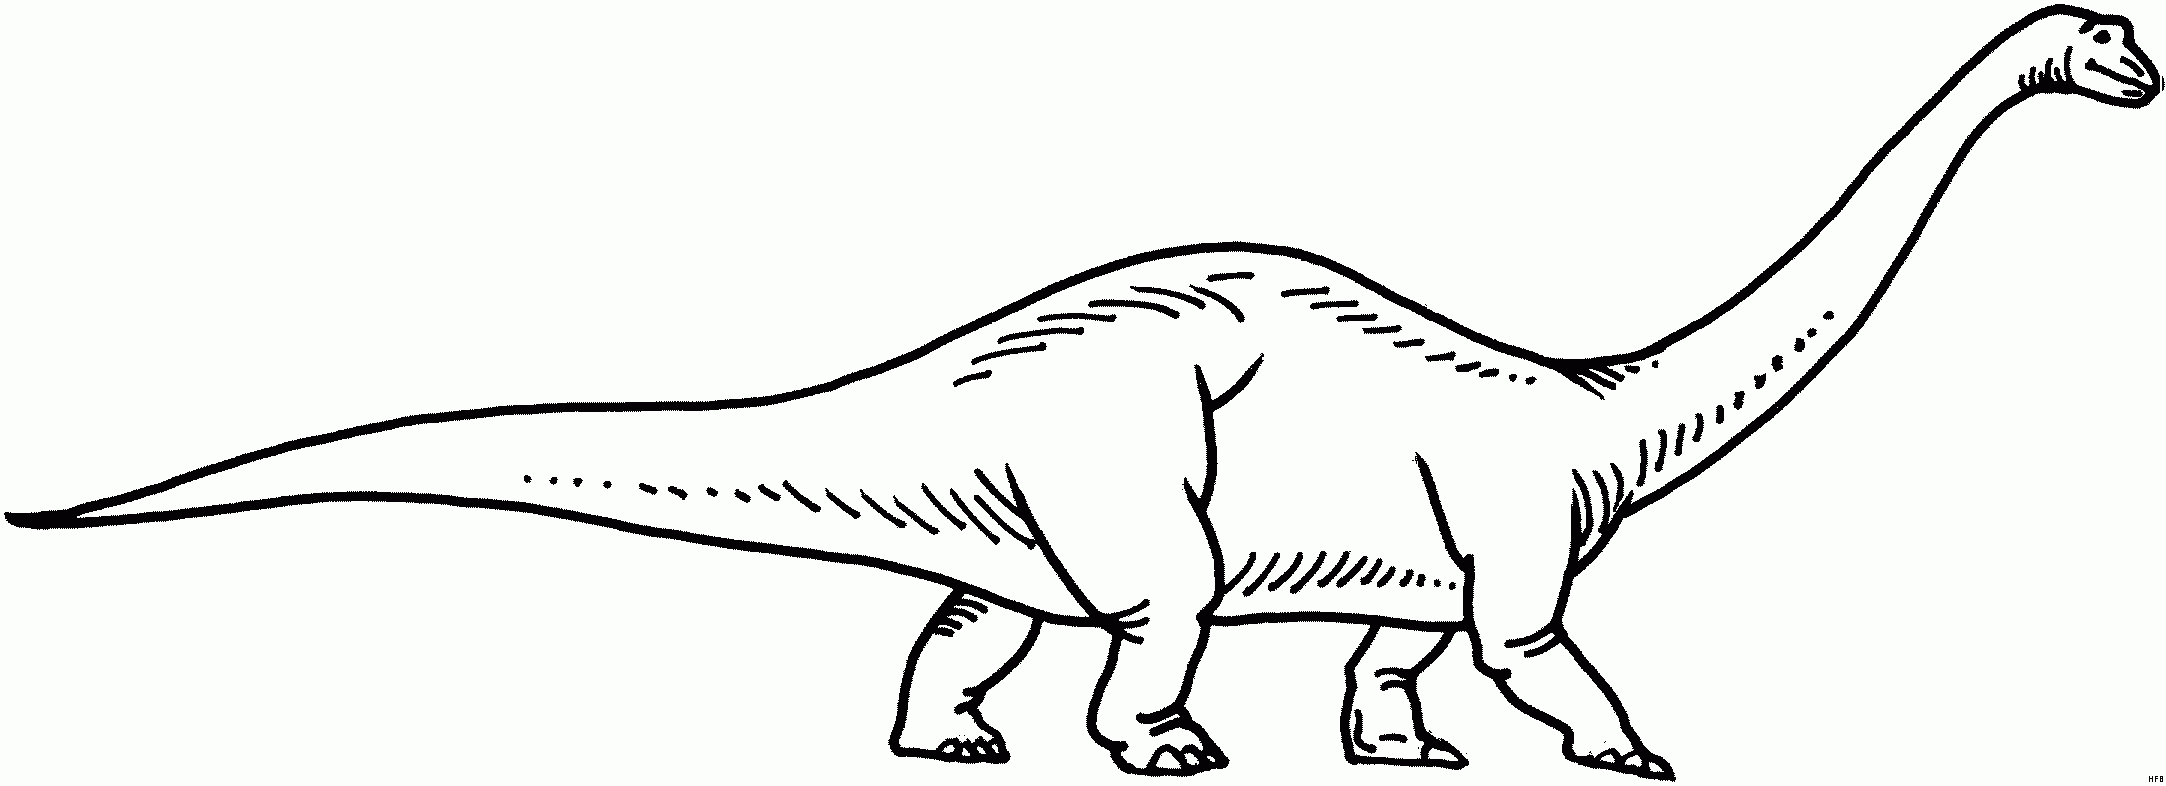 Langhals Dino Malvorlage | Coloring And Malvorlagan bestimmt für Dino Ausmalbild